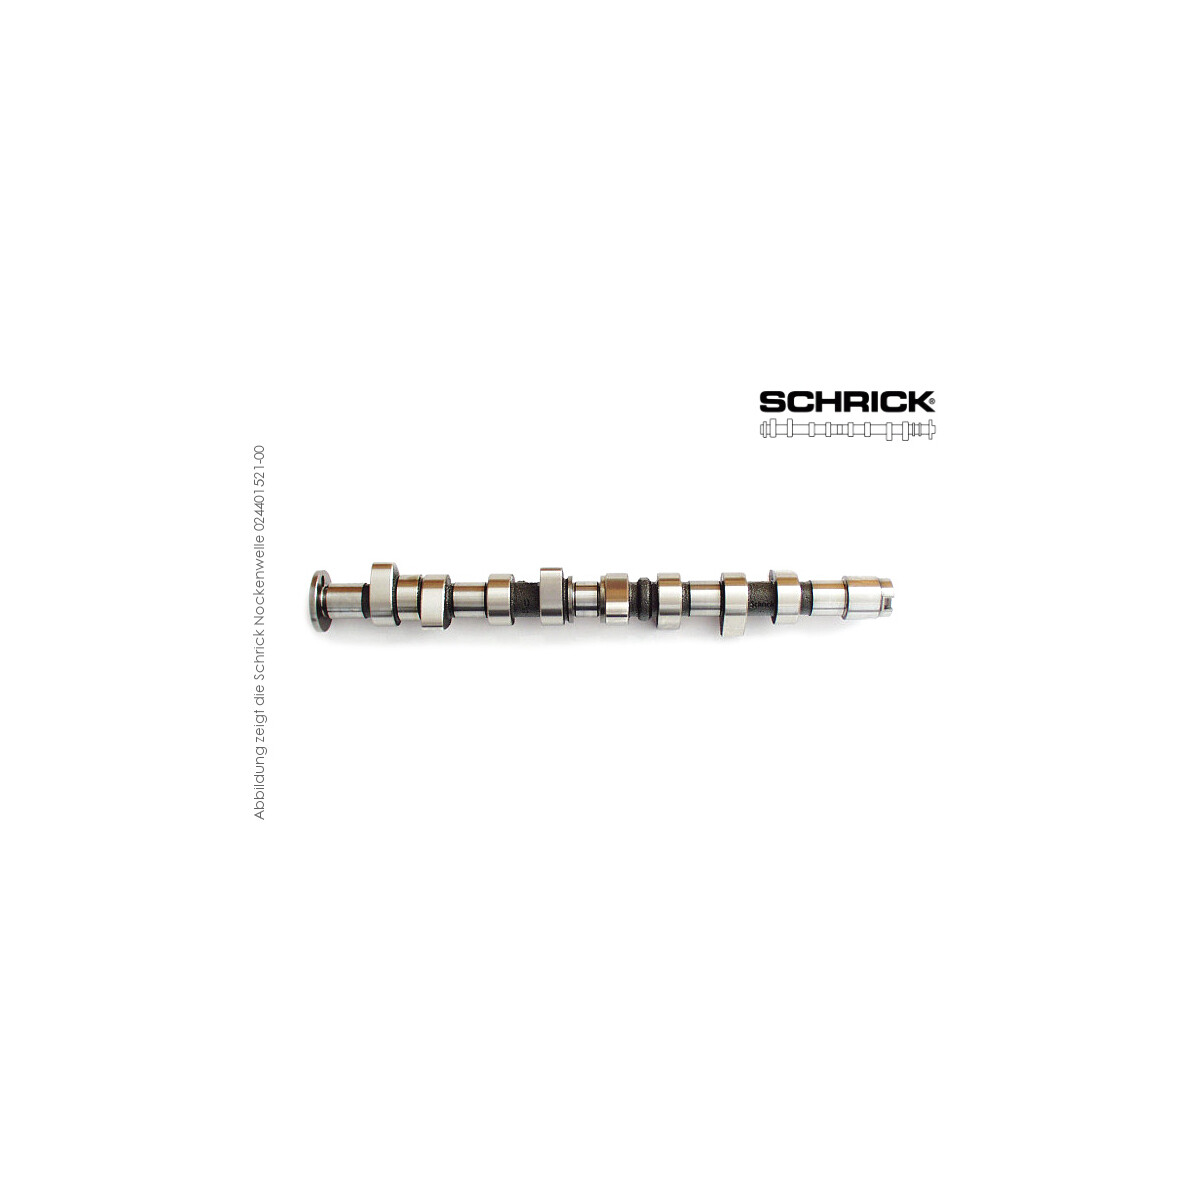 Schrick Nockenwelle für BMW M1, M5, 635Csi | 3,5L 24V 6-Zyl. M88, S38  | 272° Synchron (Schrick 0207D1720-00)